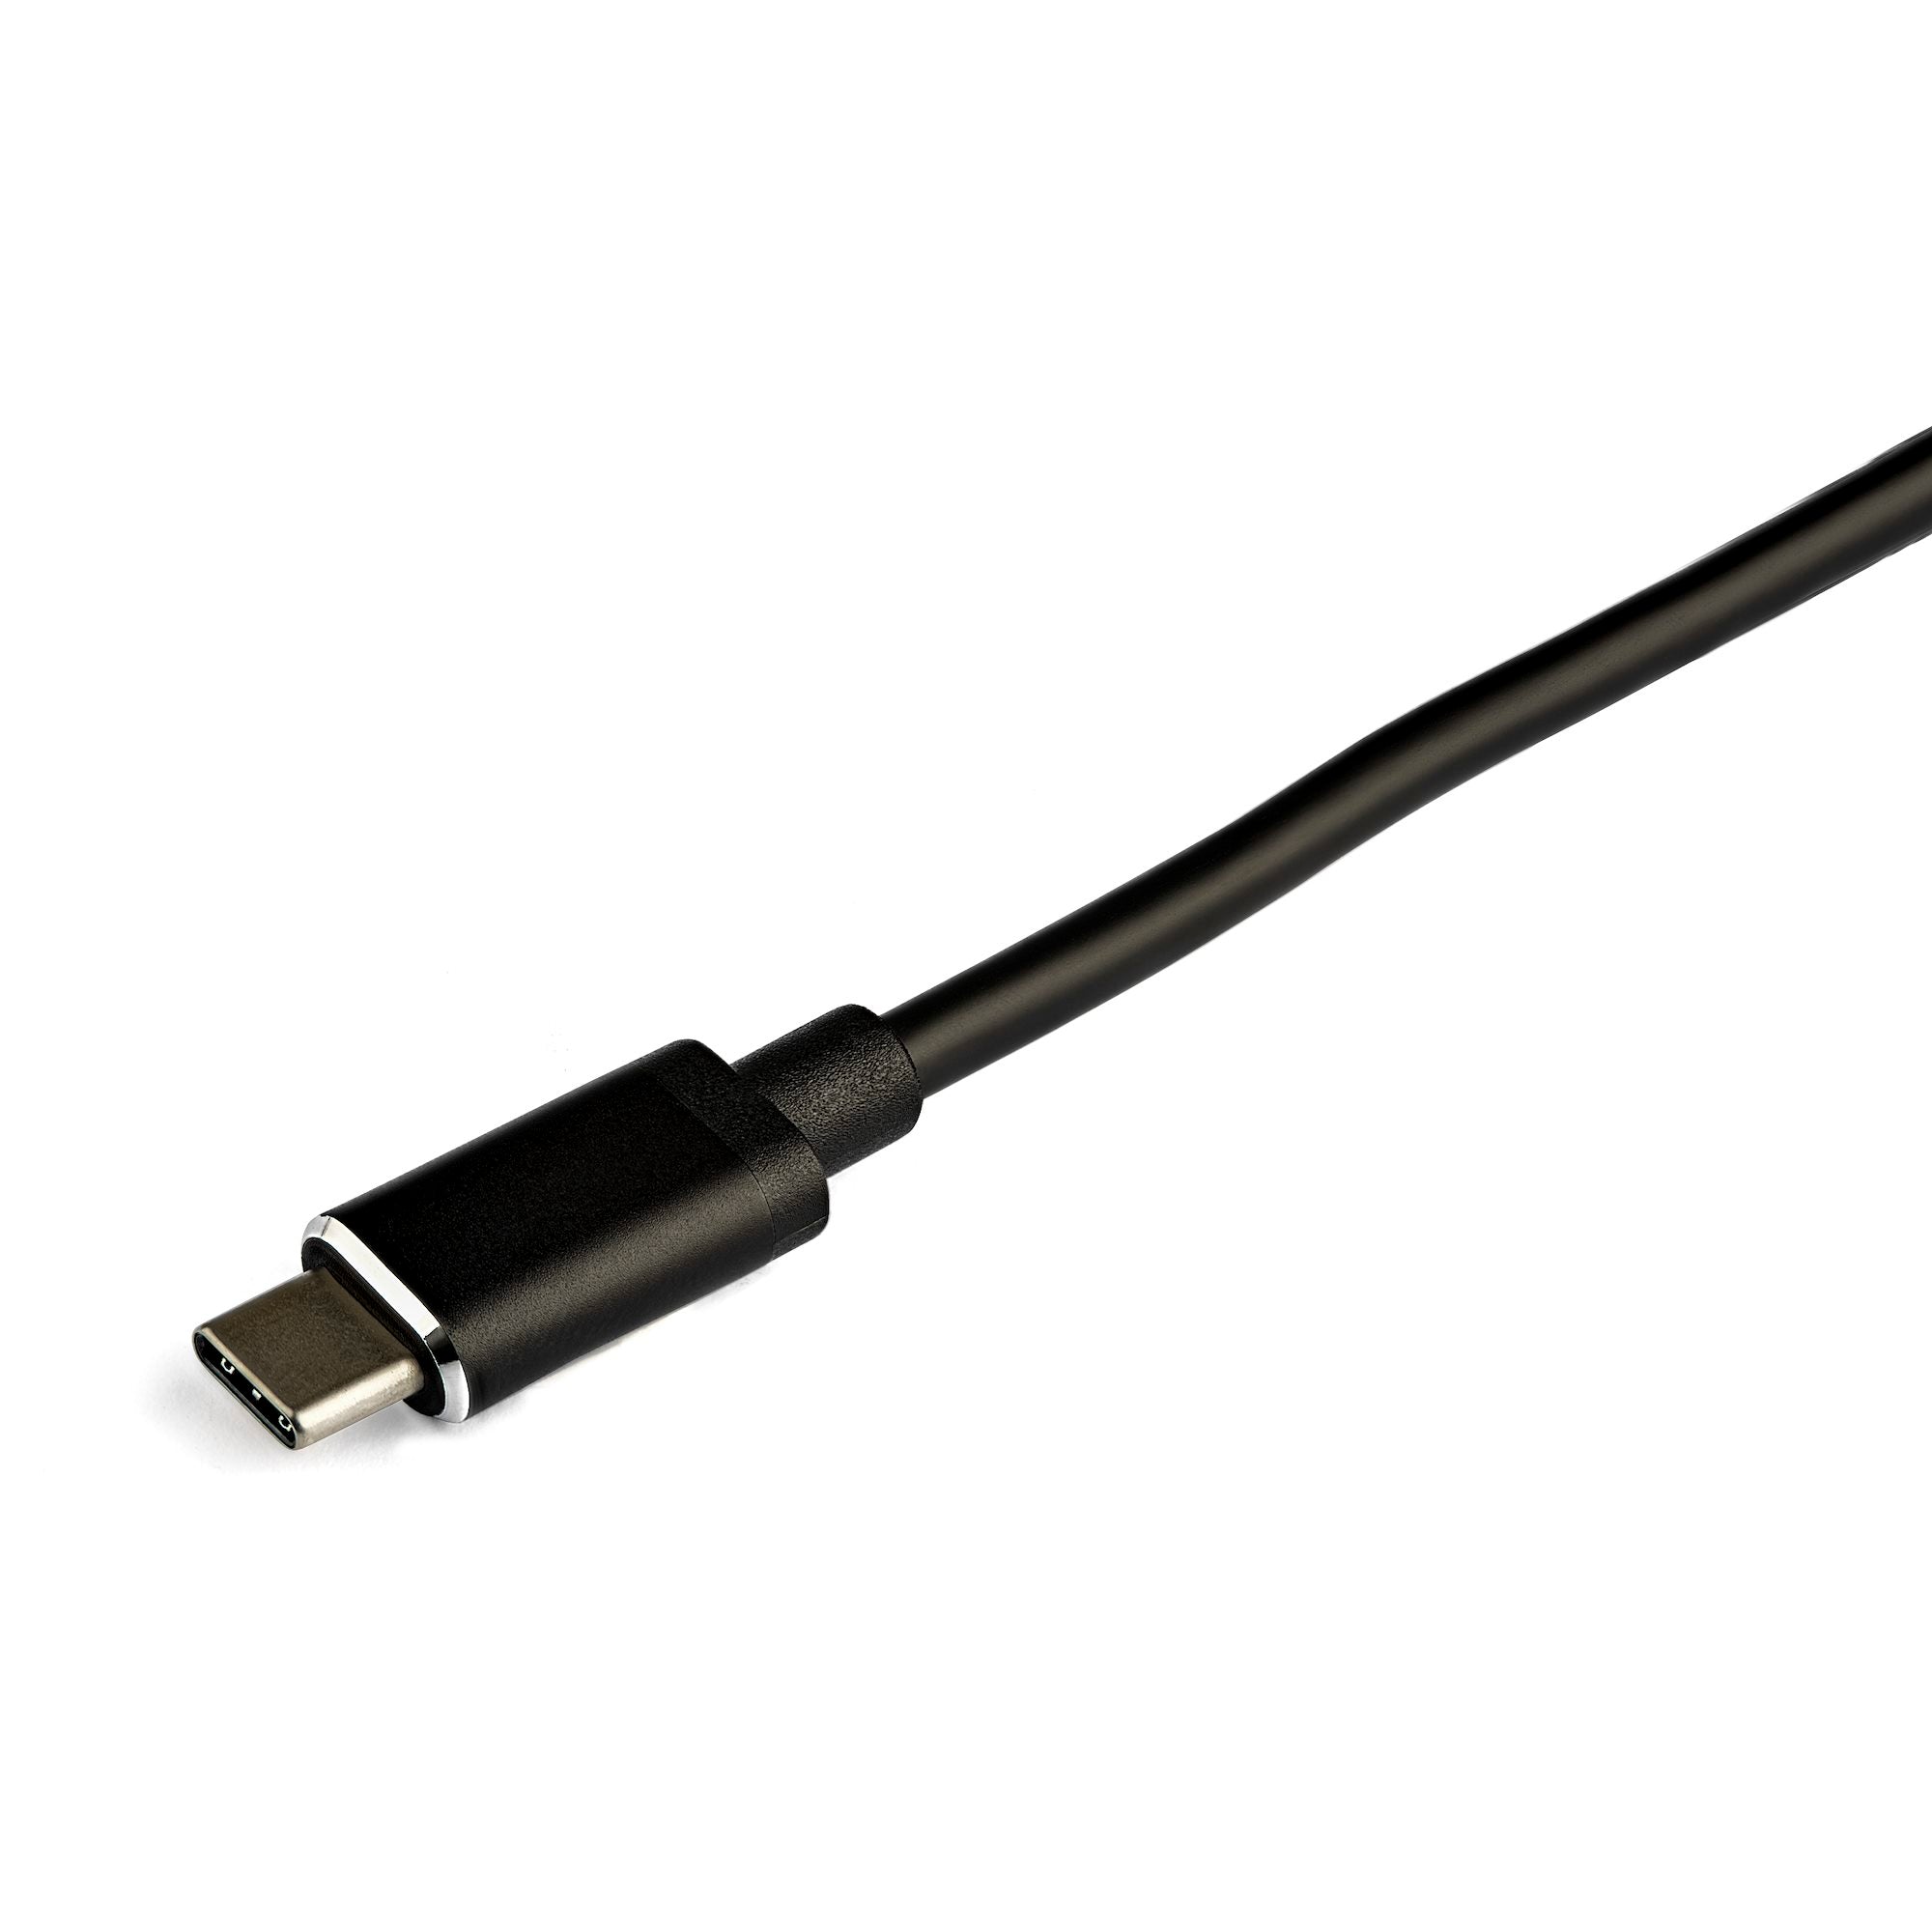 Hub USB C de 4 Puertos - Concentrador USB TipoC a 4 Puertos USB A con Interruptores Individuales de Encendido/Apagado